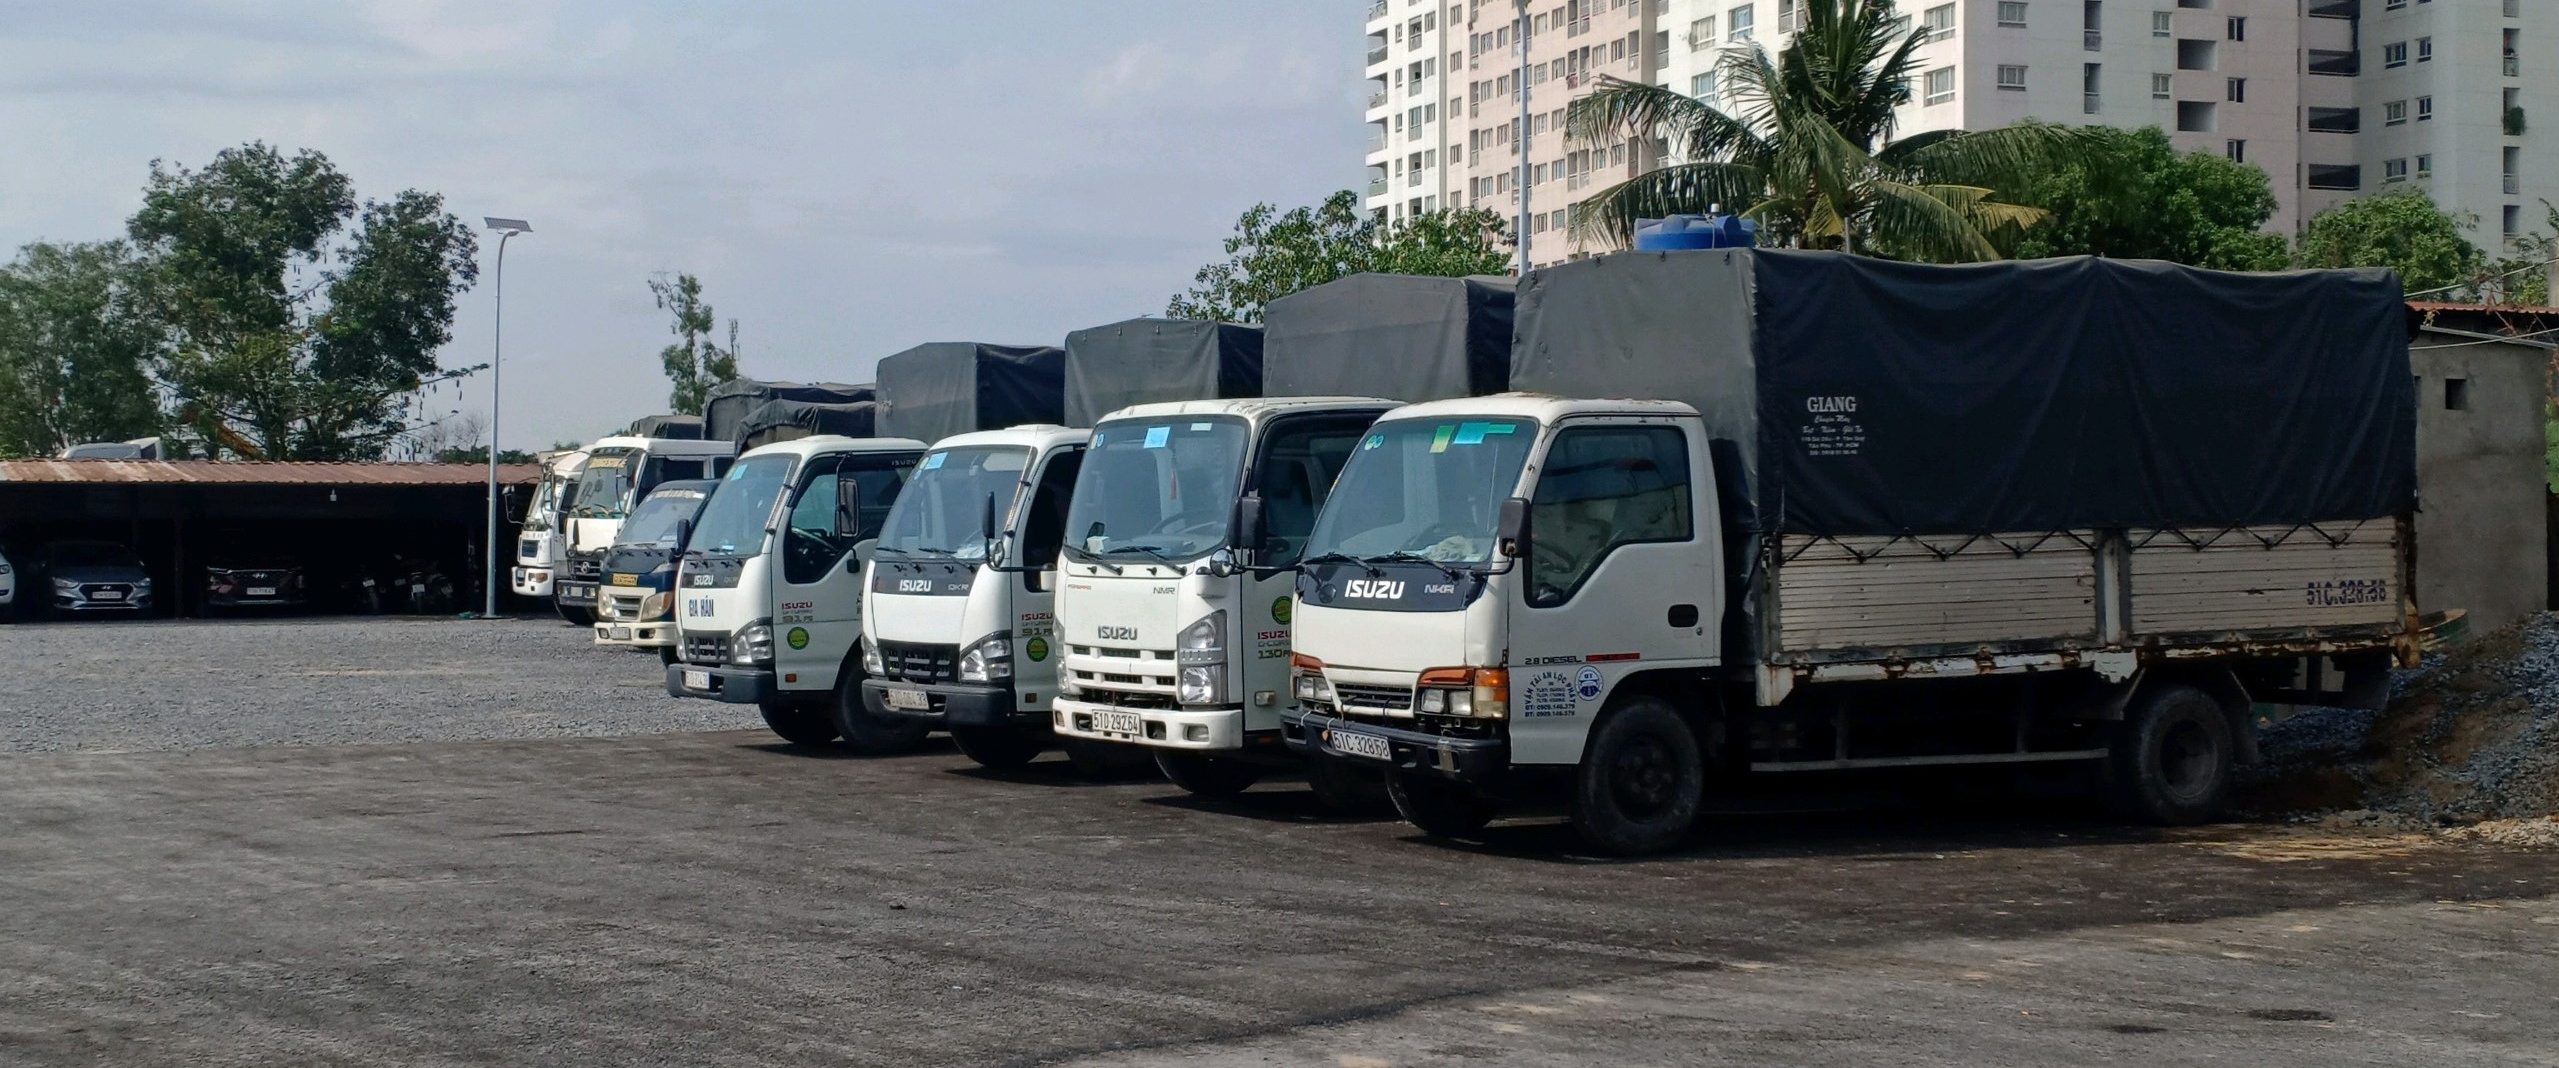 xe tải chở hàng tại quận Tân Bình